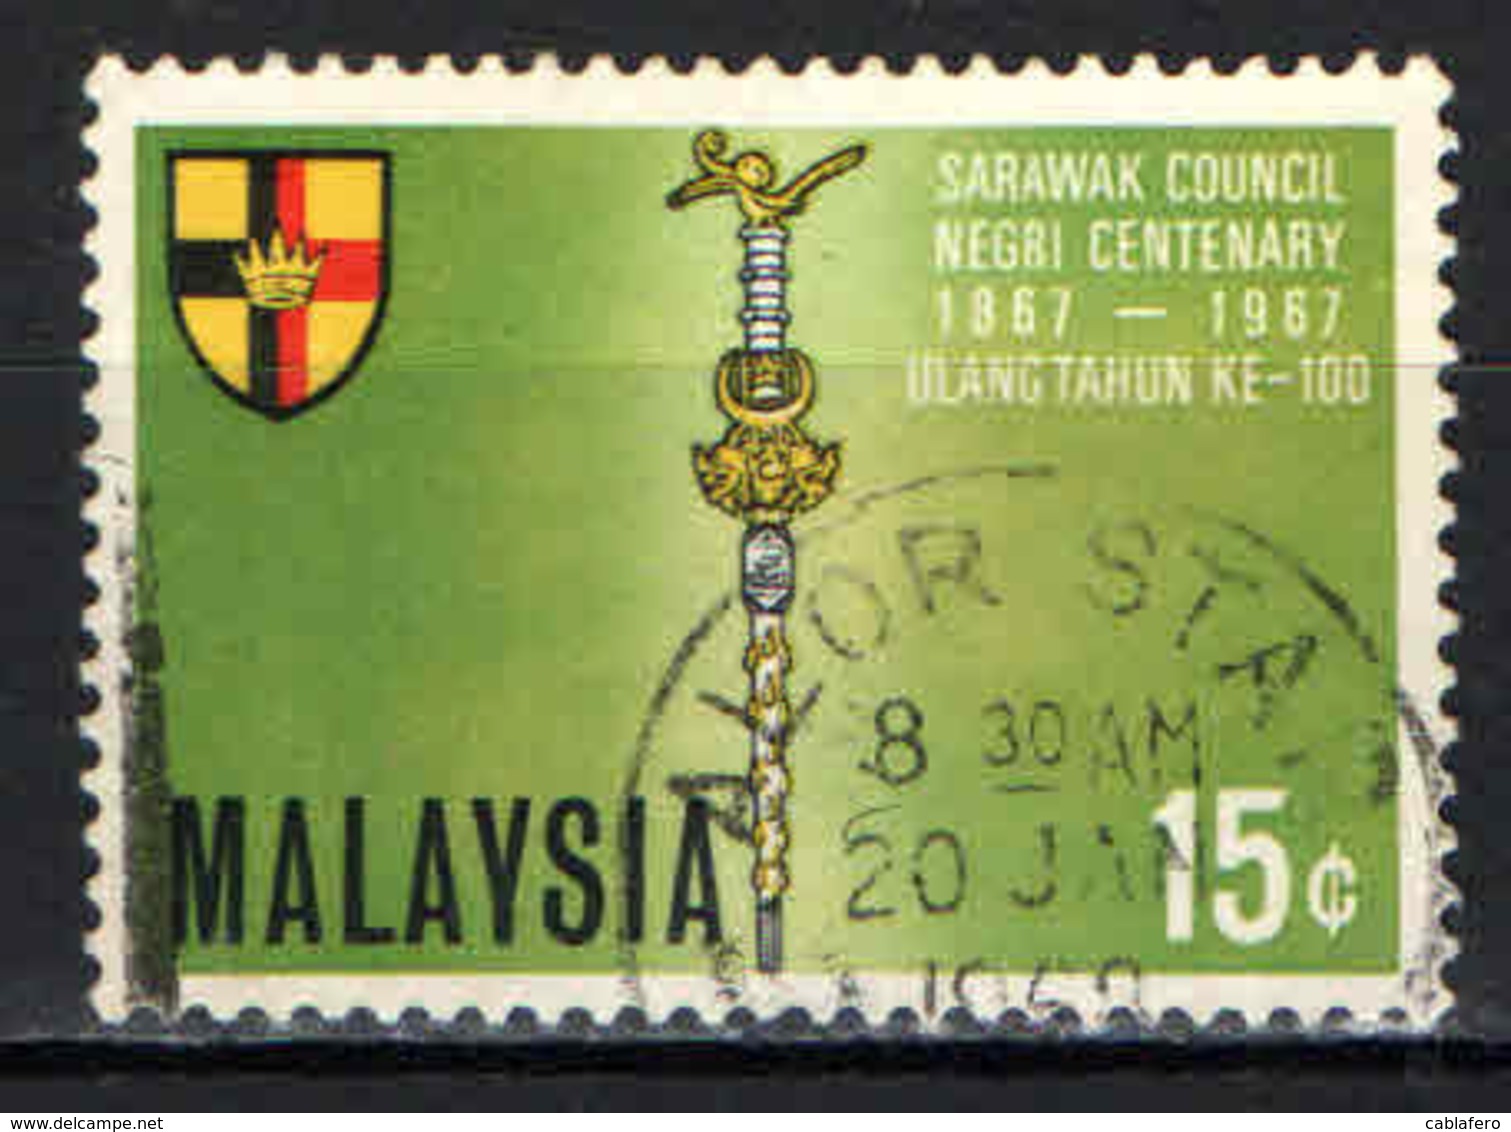 MALESIA - 1967 - Representative Council Of Sarawak, Cent. - USATO - Malesia (1964-...)